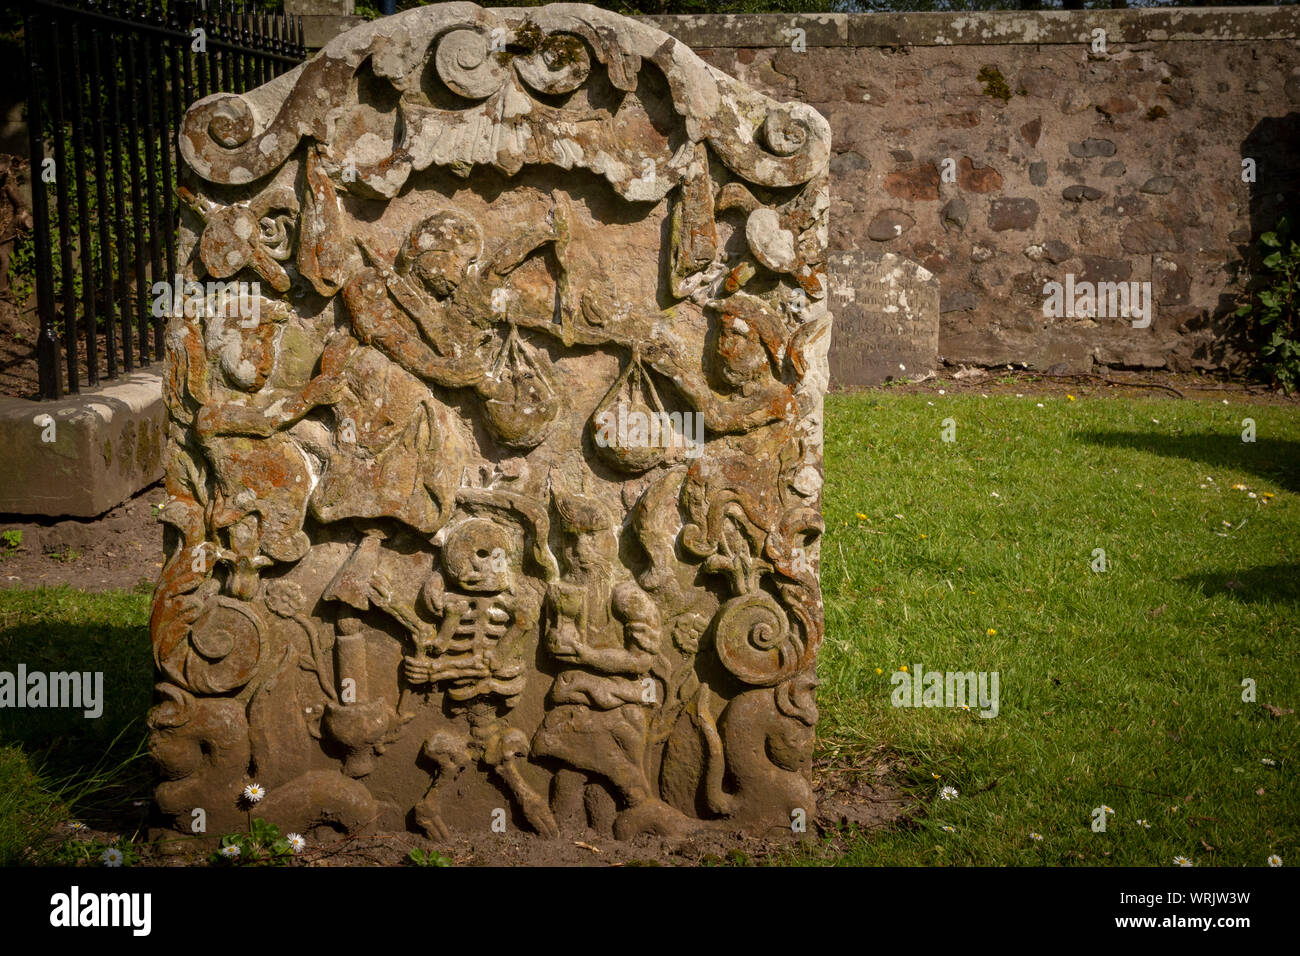 Lápidas mostrando escenas de tam o shanter en tallas de piedra en el auld kirk en alloway en Ayr Foto de stock